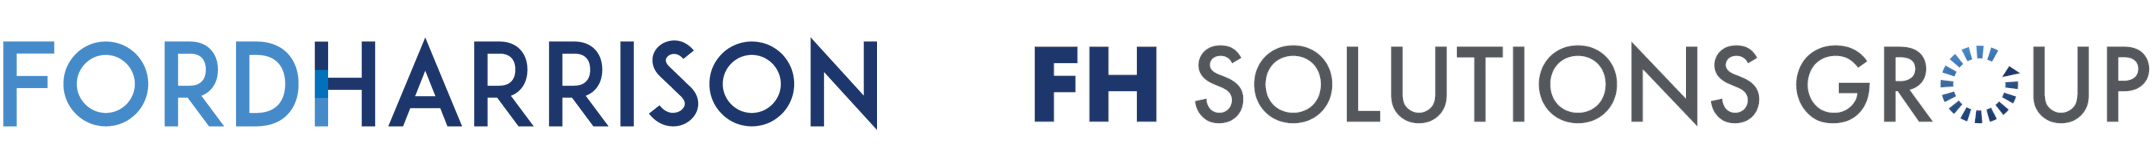 ford harrison logo